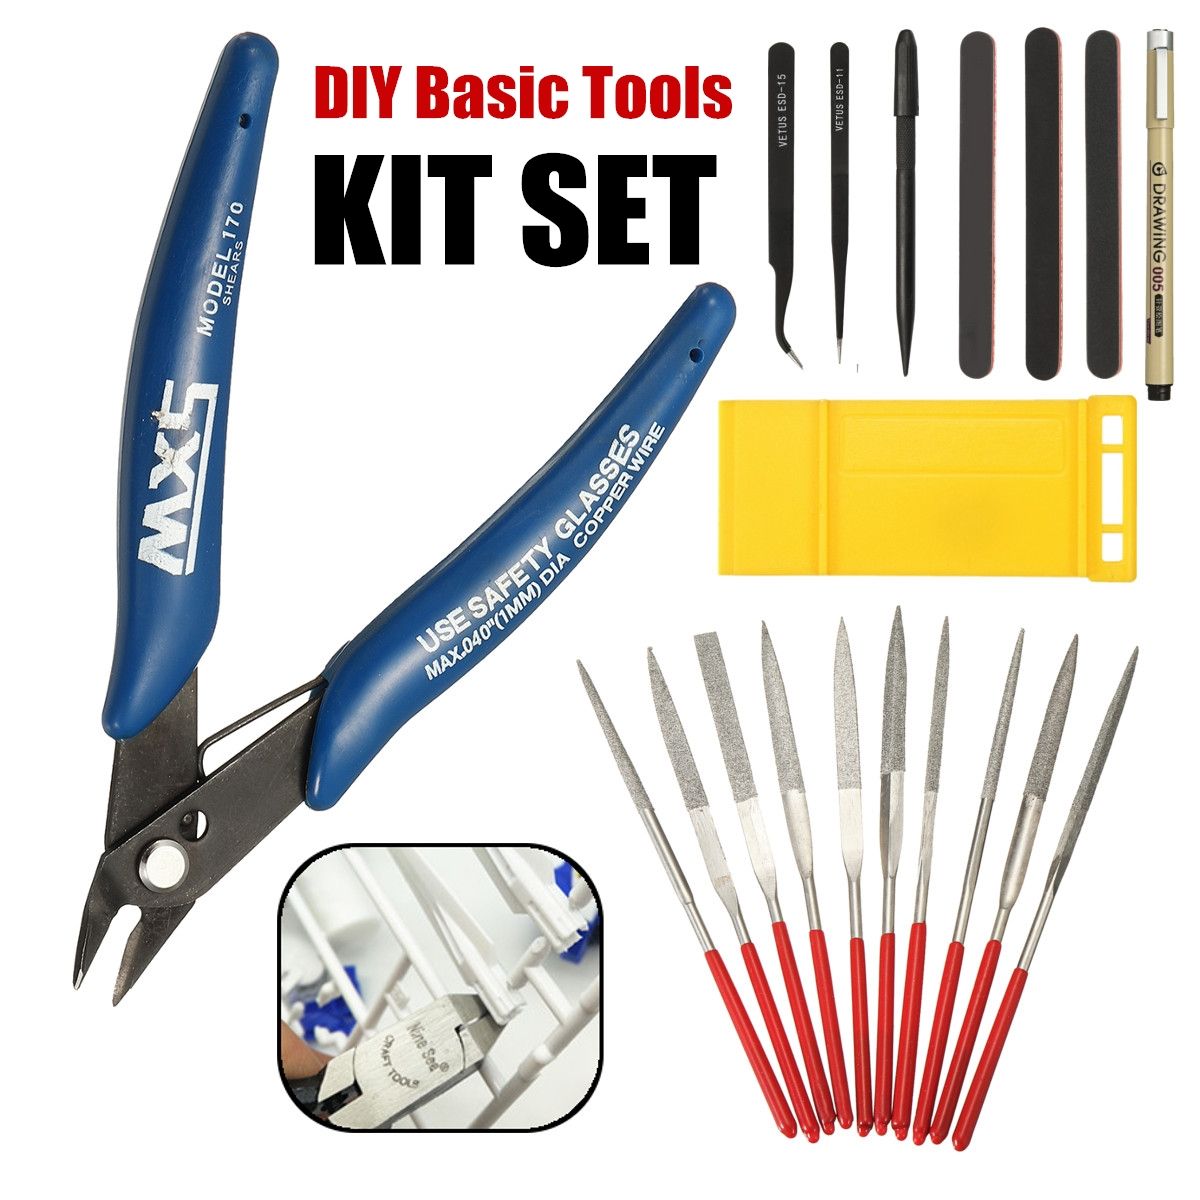 DIY-Basic-Tools-Craft-Set-Car-Model-Building-Repair-Kit-For-Gundam-Modeler-Tools-Kit-1363072